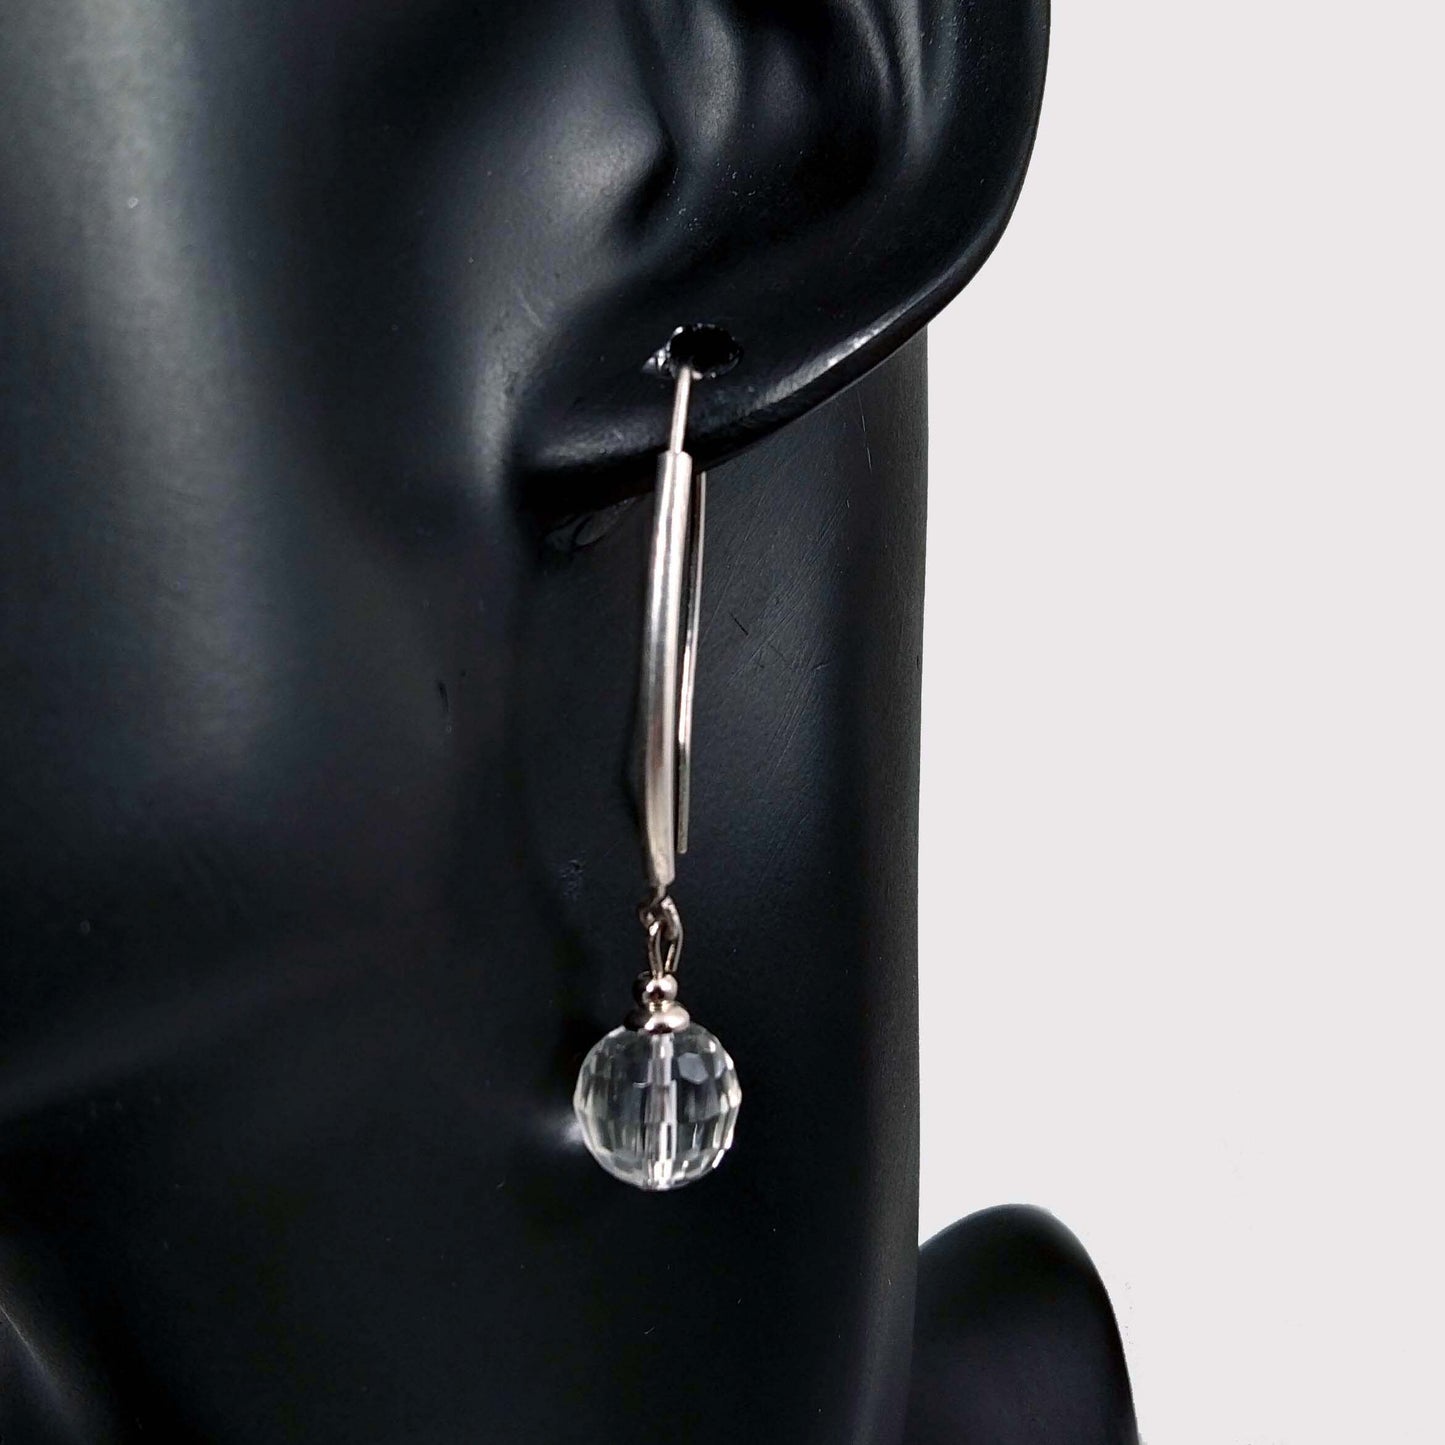 Faceted Quartz Ball Earrings, Sterling Silver Long Ear Hook, Rock Crystal Geometric Jewelry